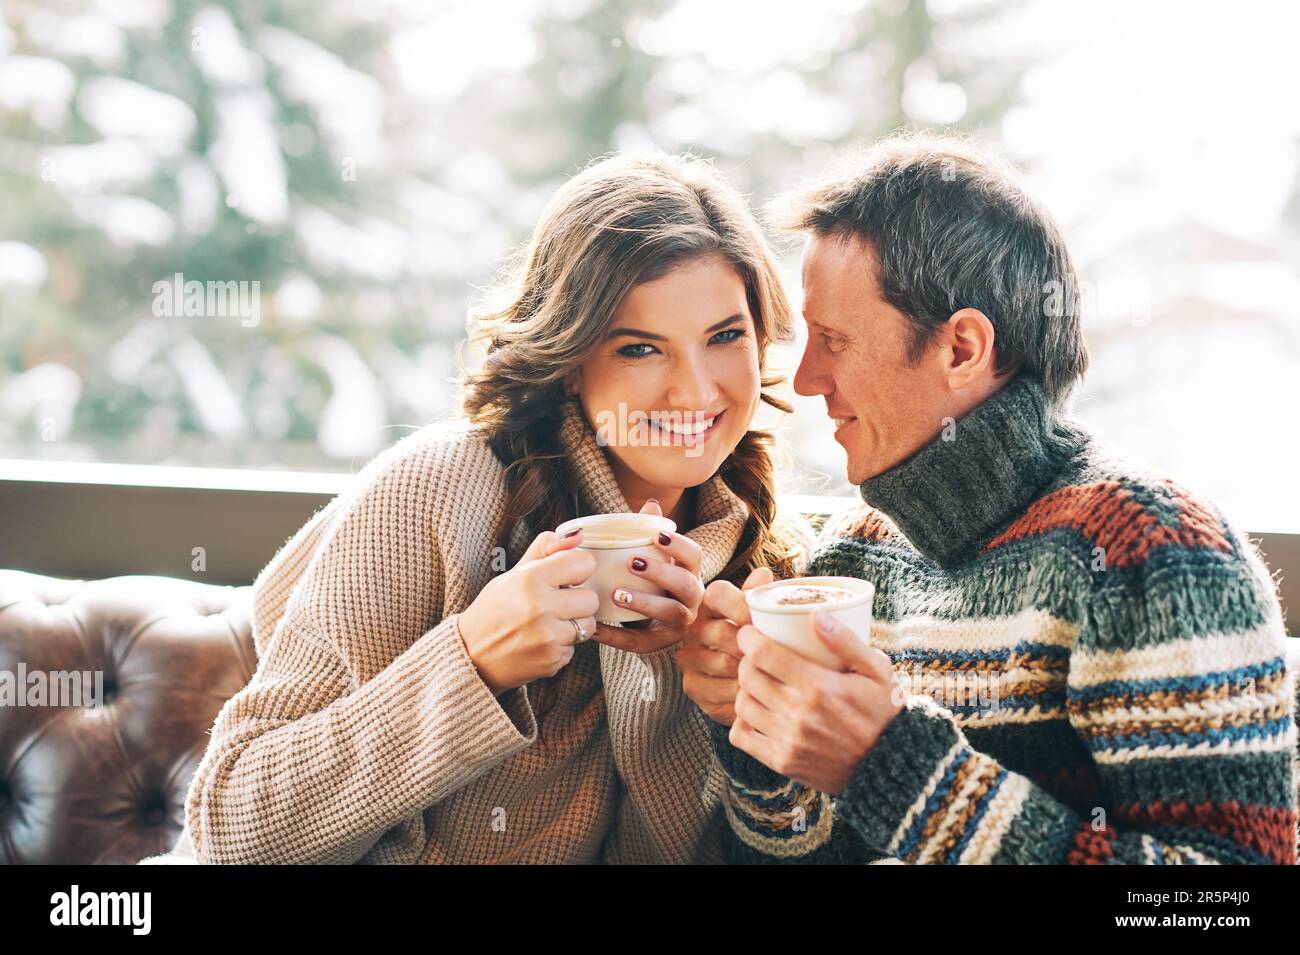 Ein Paar mittleren Alters, das sich auf der Ledercouch ausruht, Kaffee trinkt, warme, gemütliche Pullover trägt Stockfoto